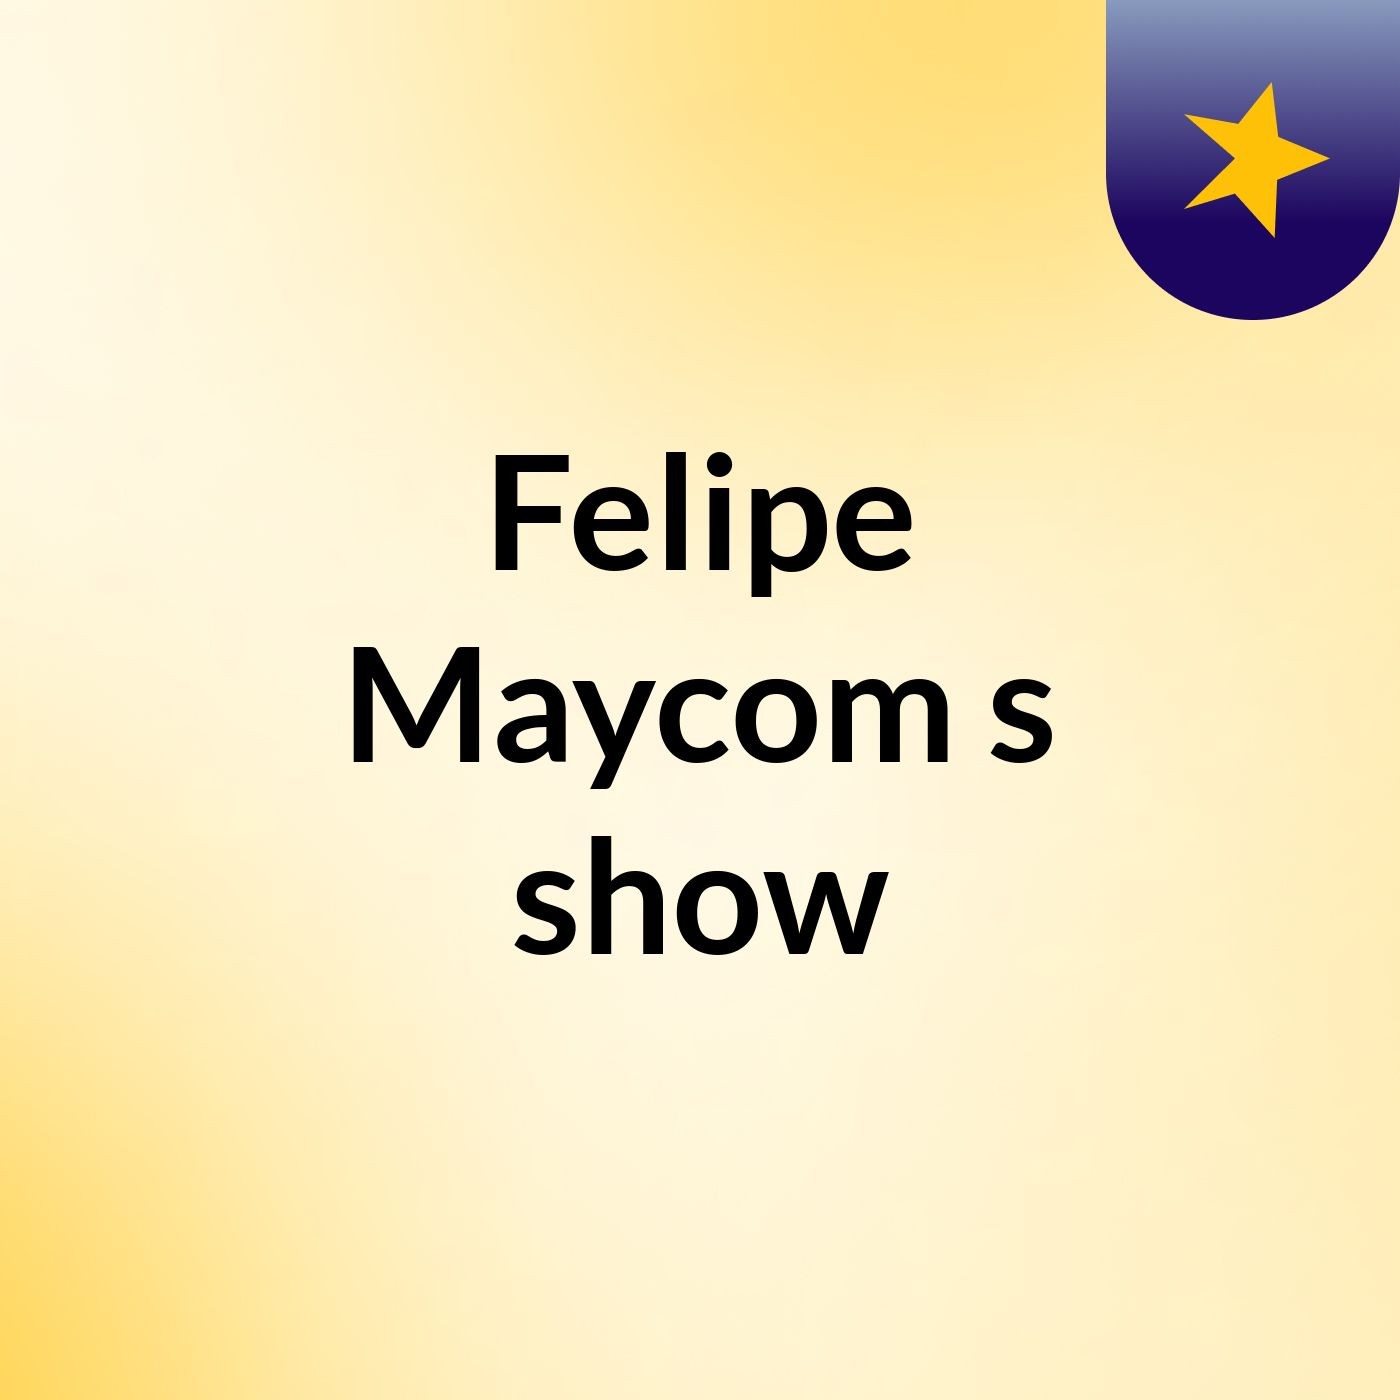 Felipe Maycom's show